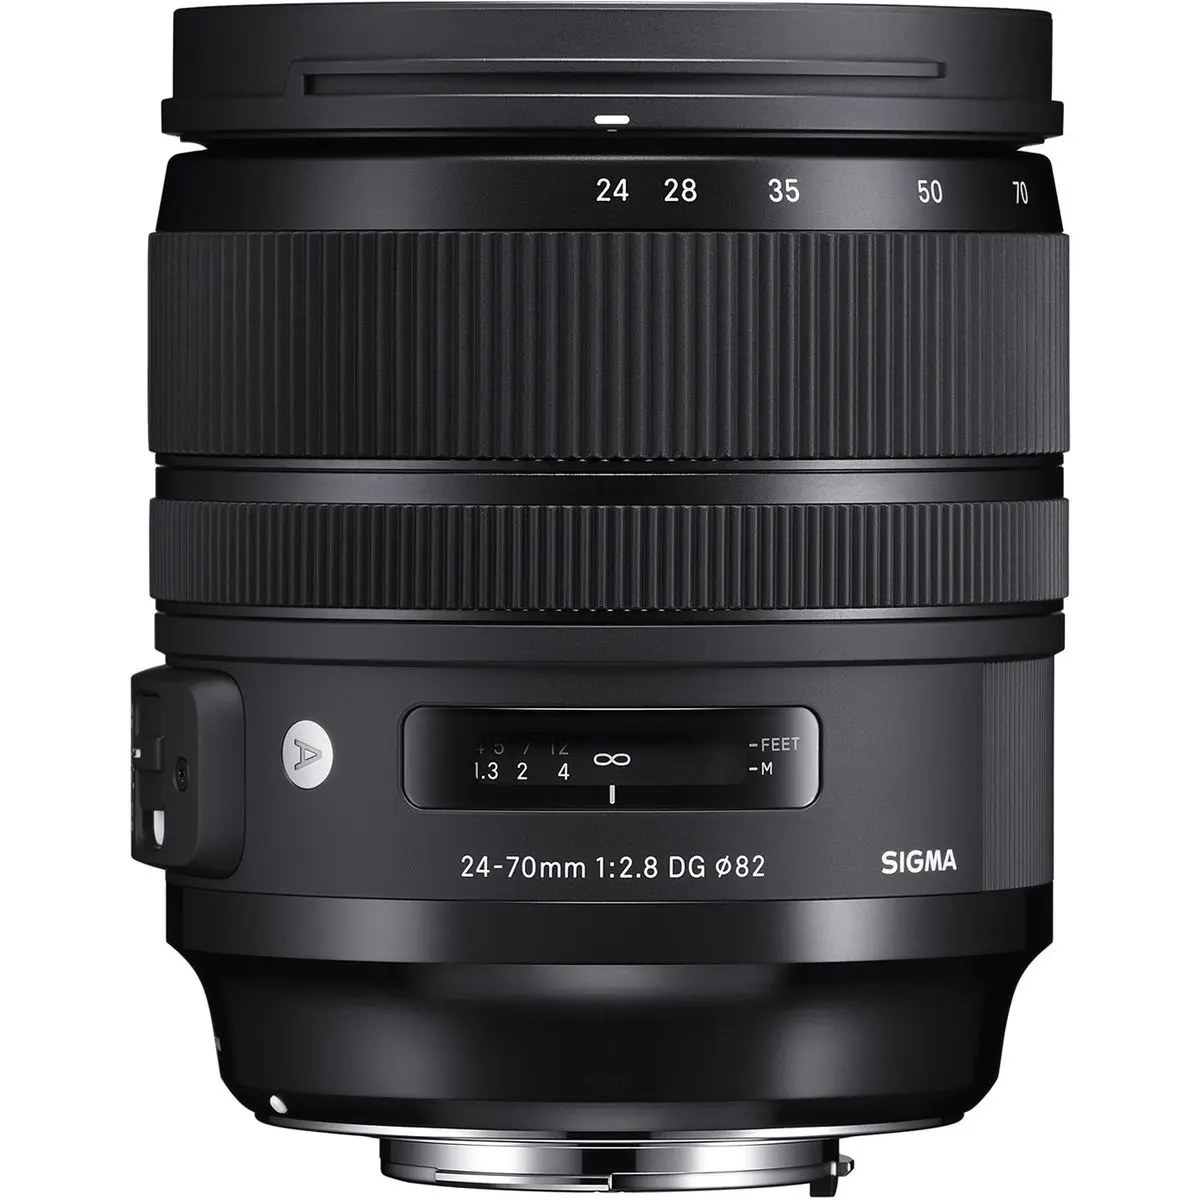 1. Sigma 24-70mm F2.8 DG OS HSM Art for Nikon F Mount Lens